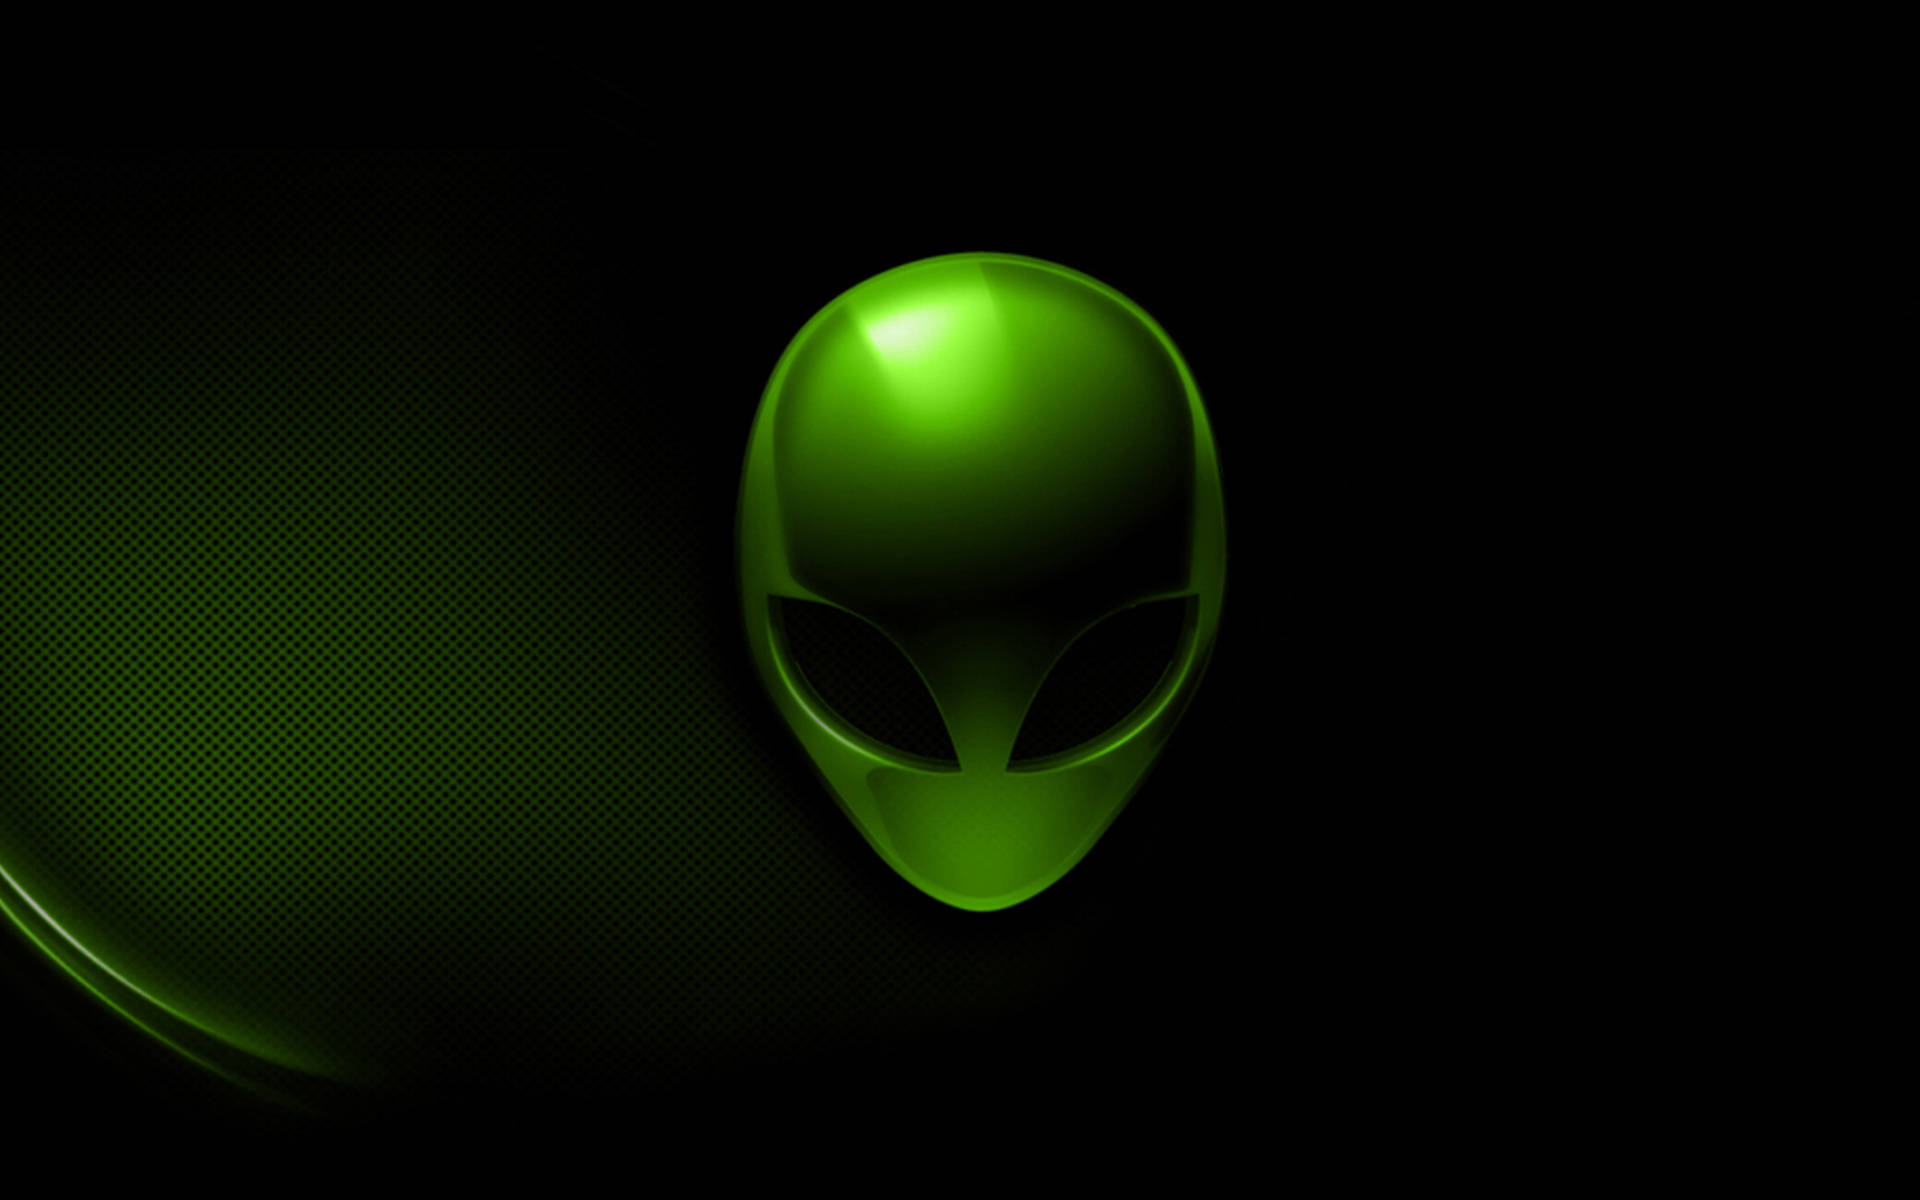 Alienware Default Green Logo